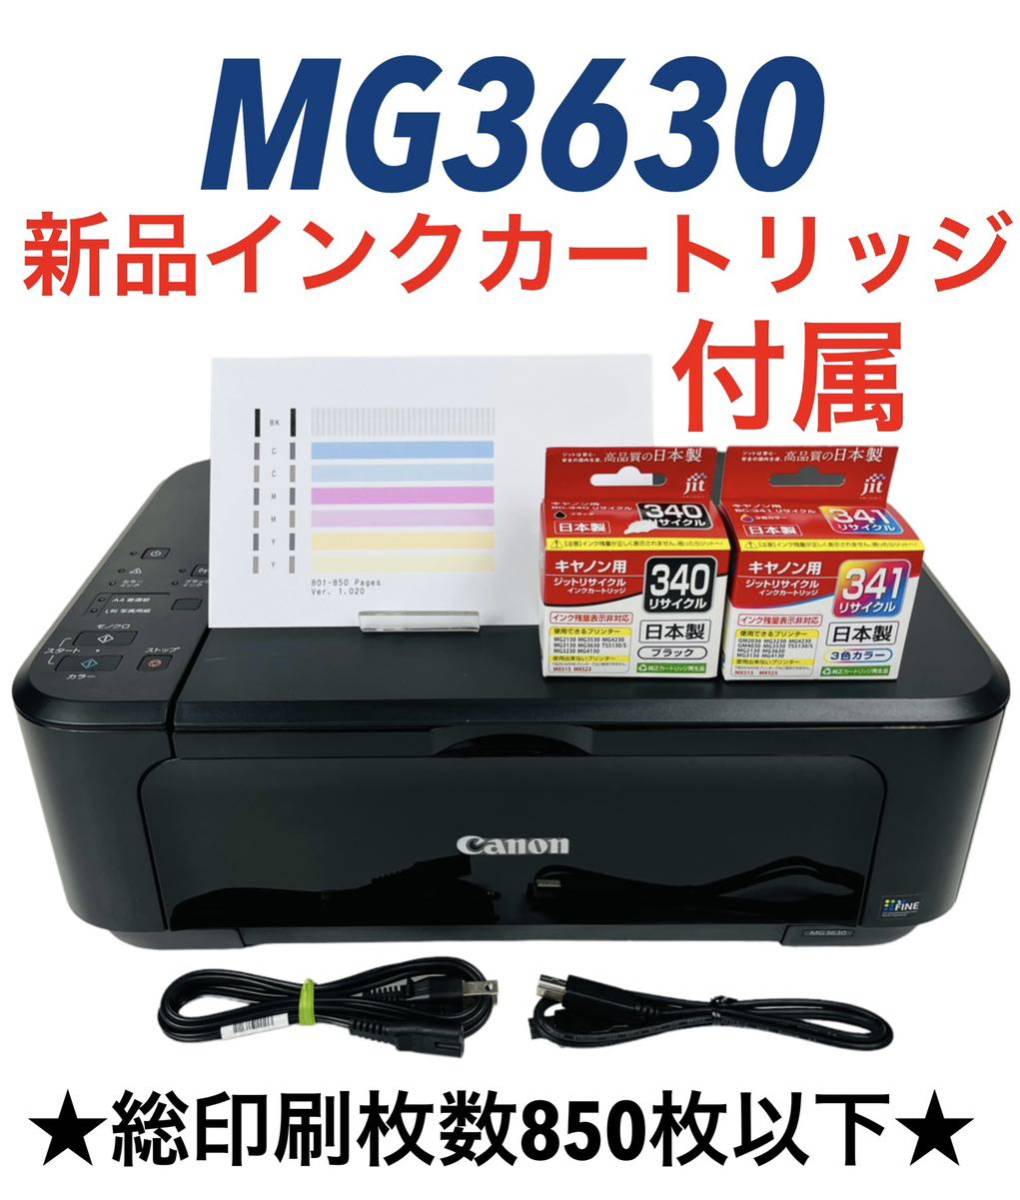 新規購入 旧モデル Canon インクジェットプリンター複合機 PIXUS MG3630 RD レッド